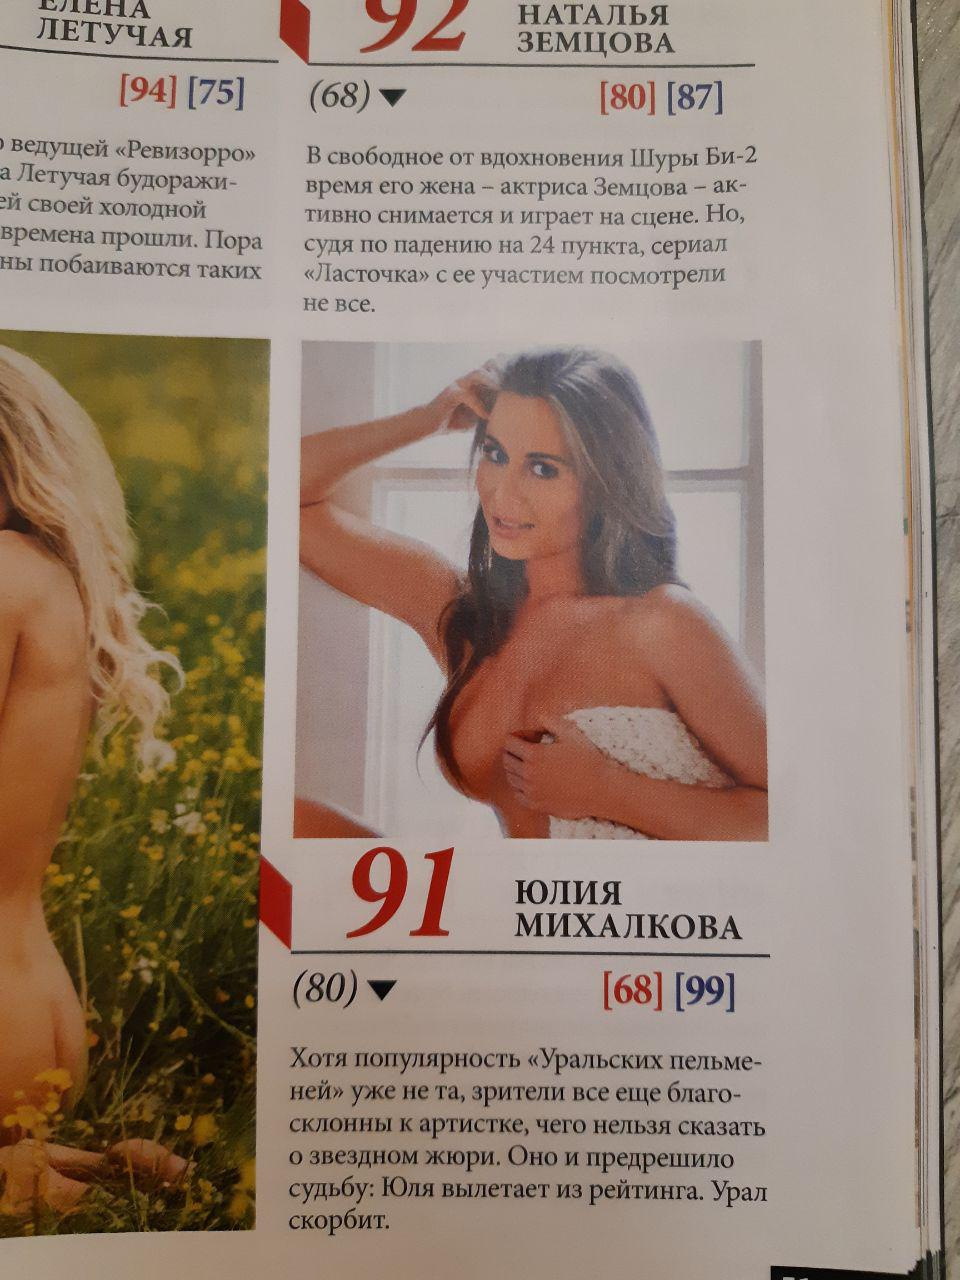 Редакция журнала сообщила, что Юлия выбывает из рейтинга